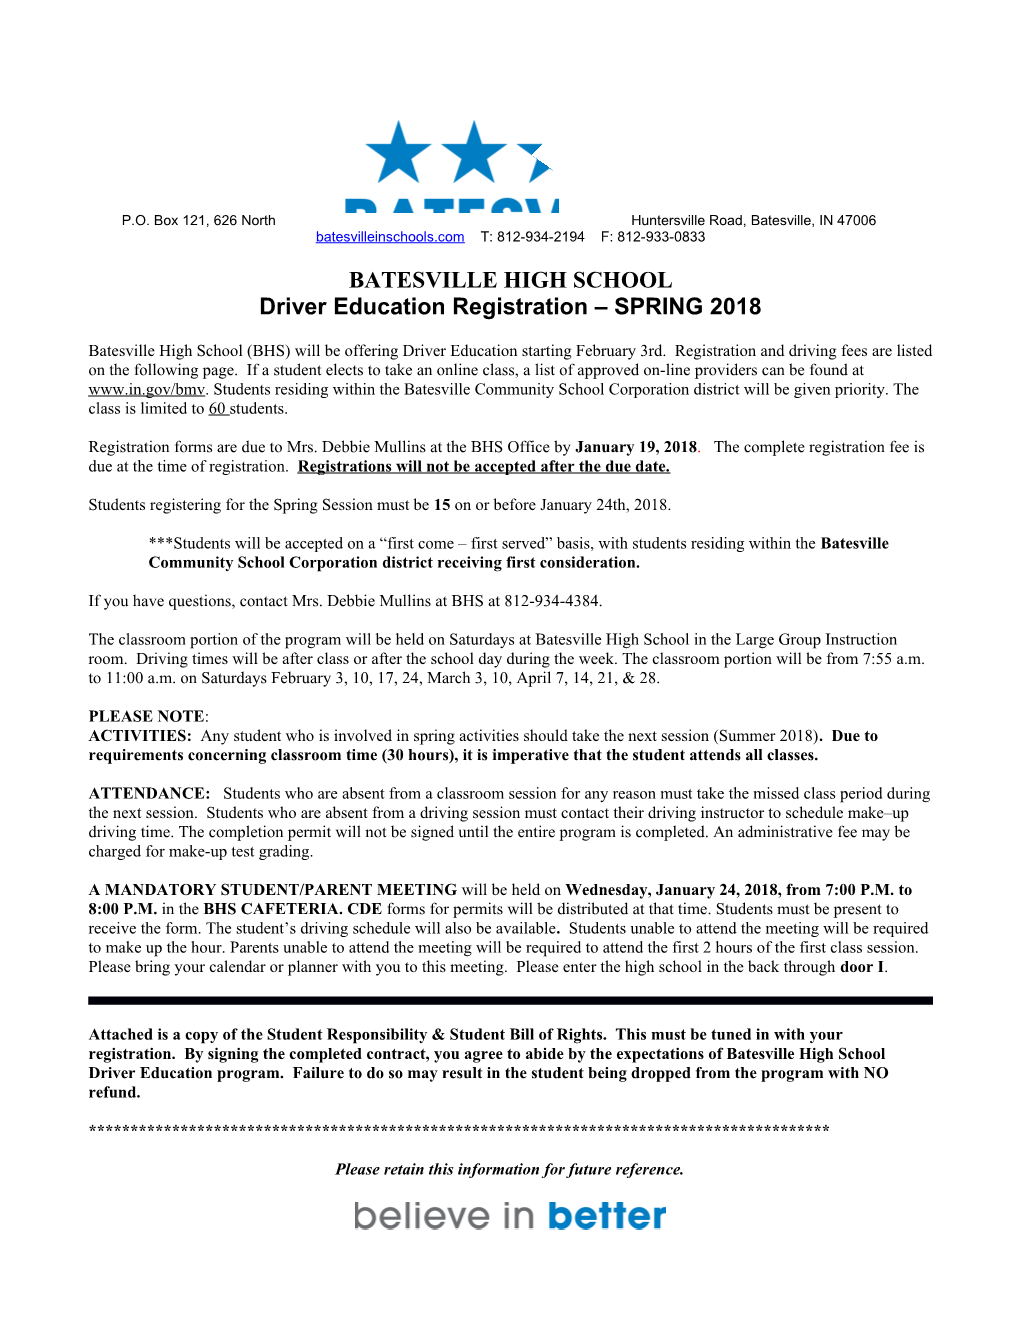 Driver Education Registration SPRING 2018